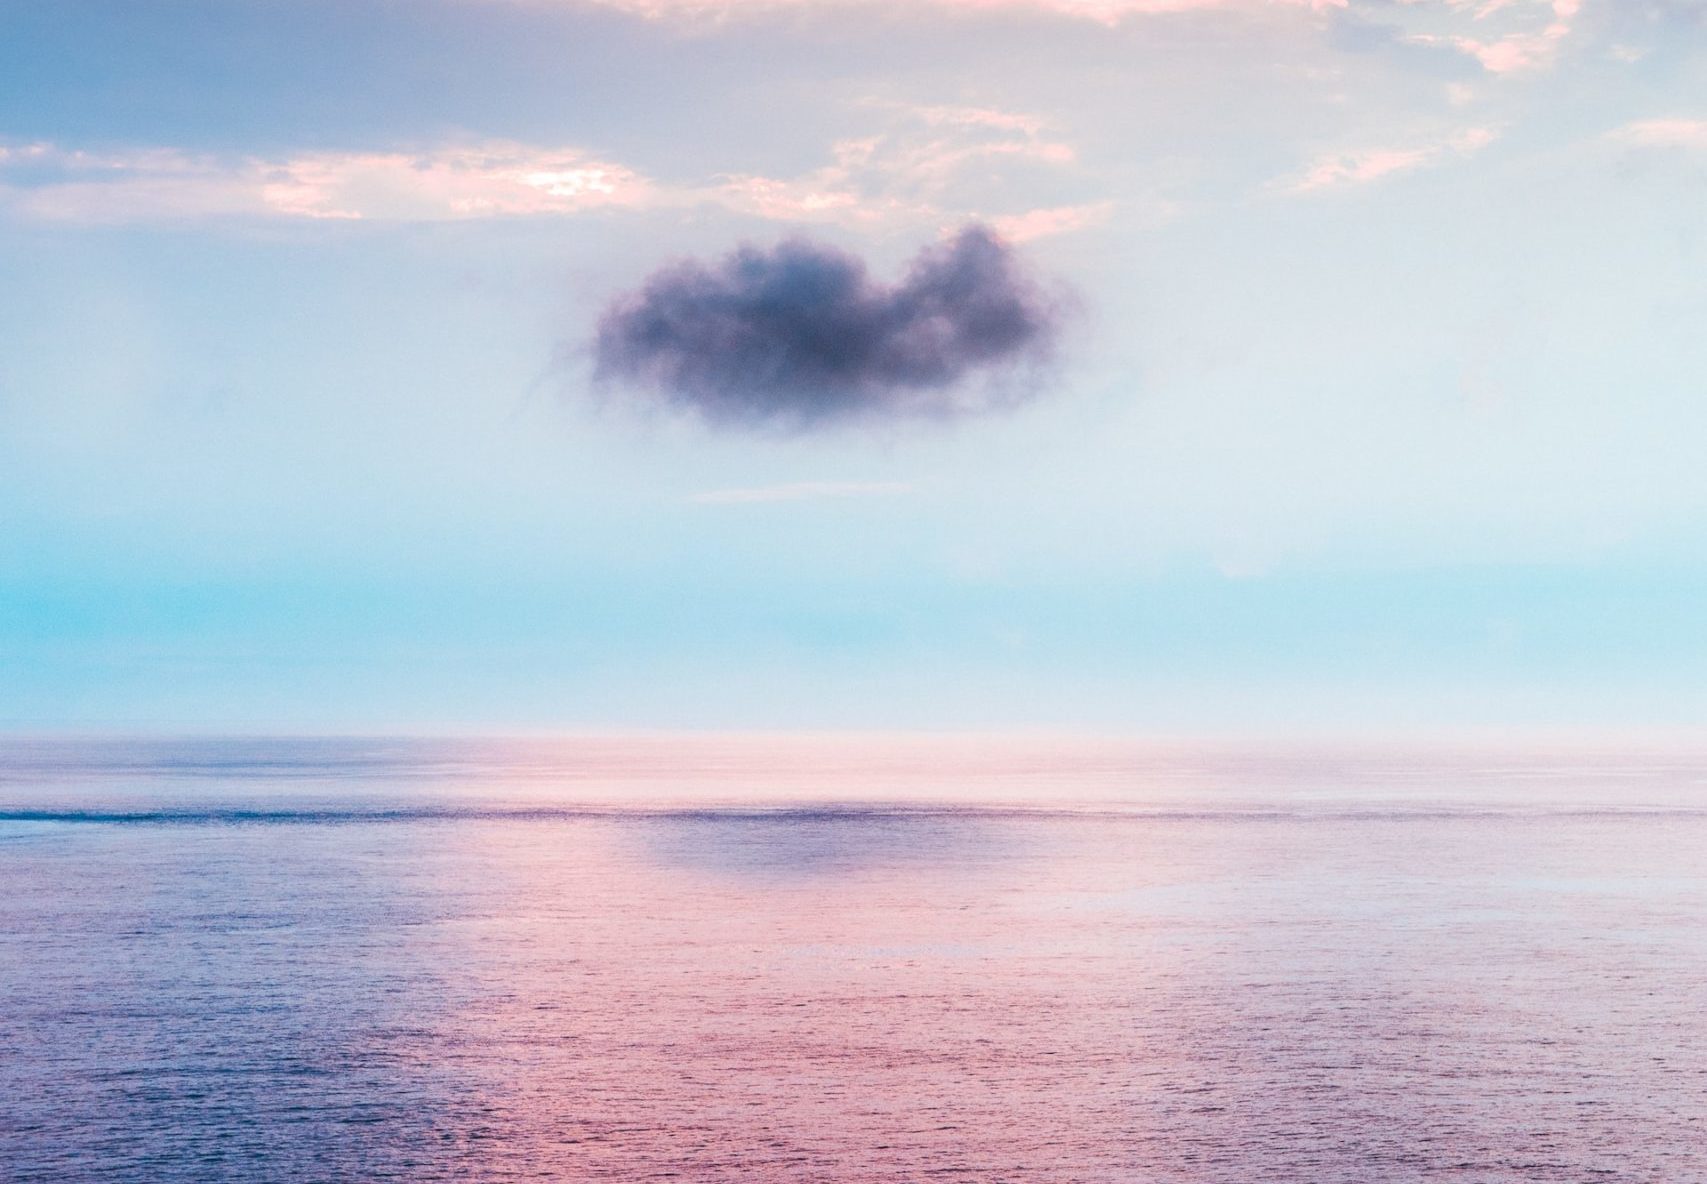 Cloud over the ocean